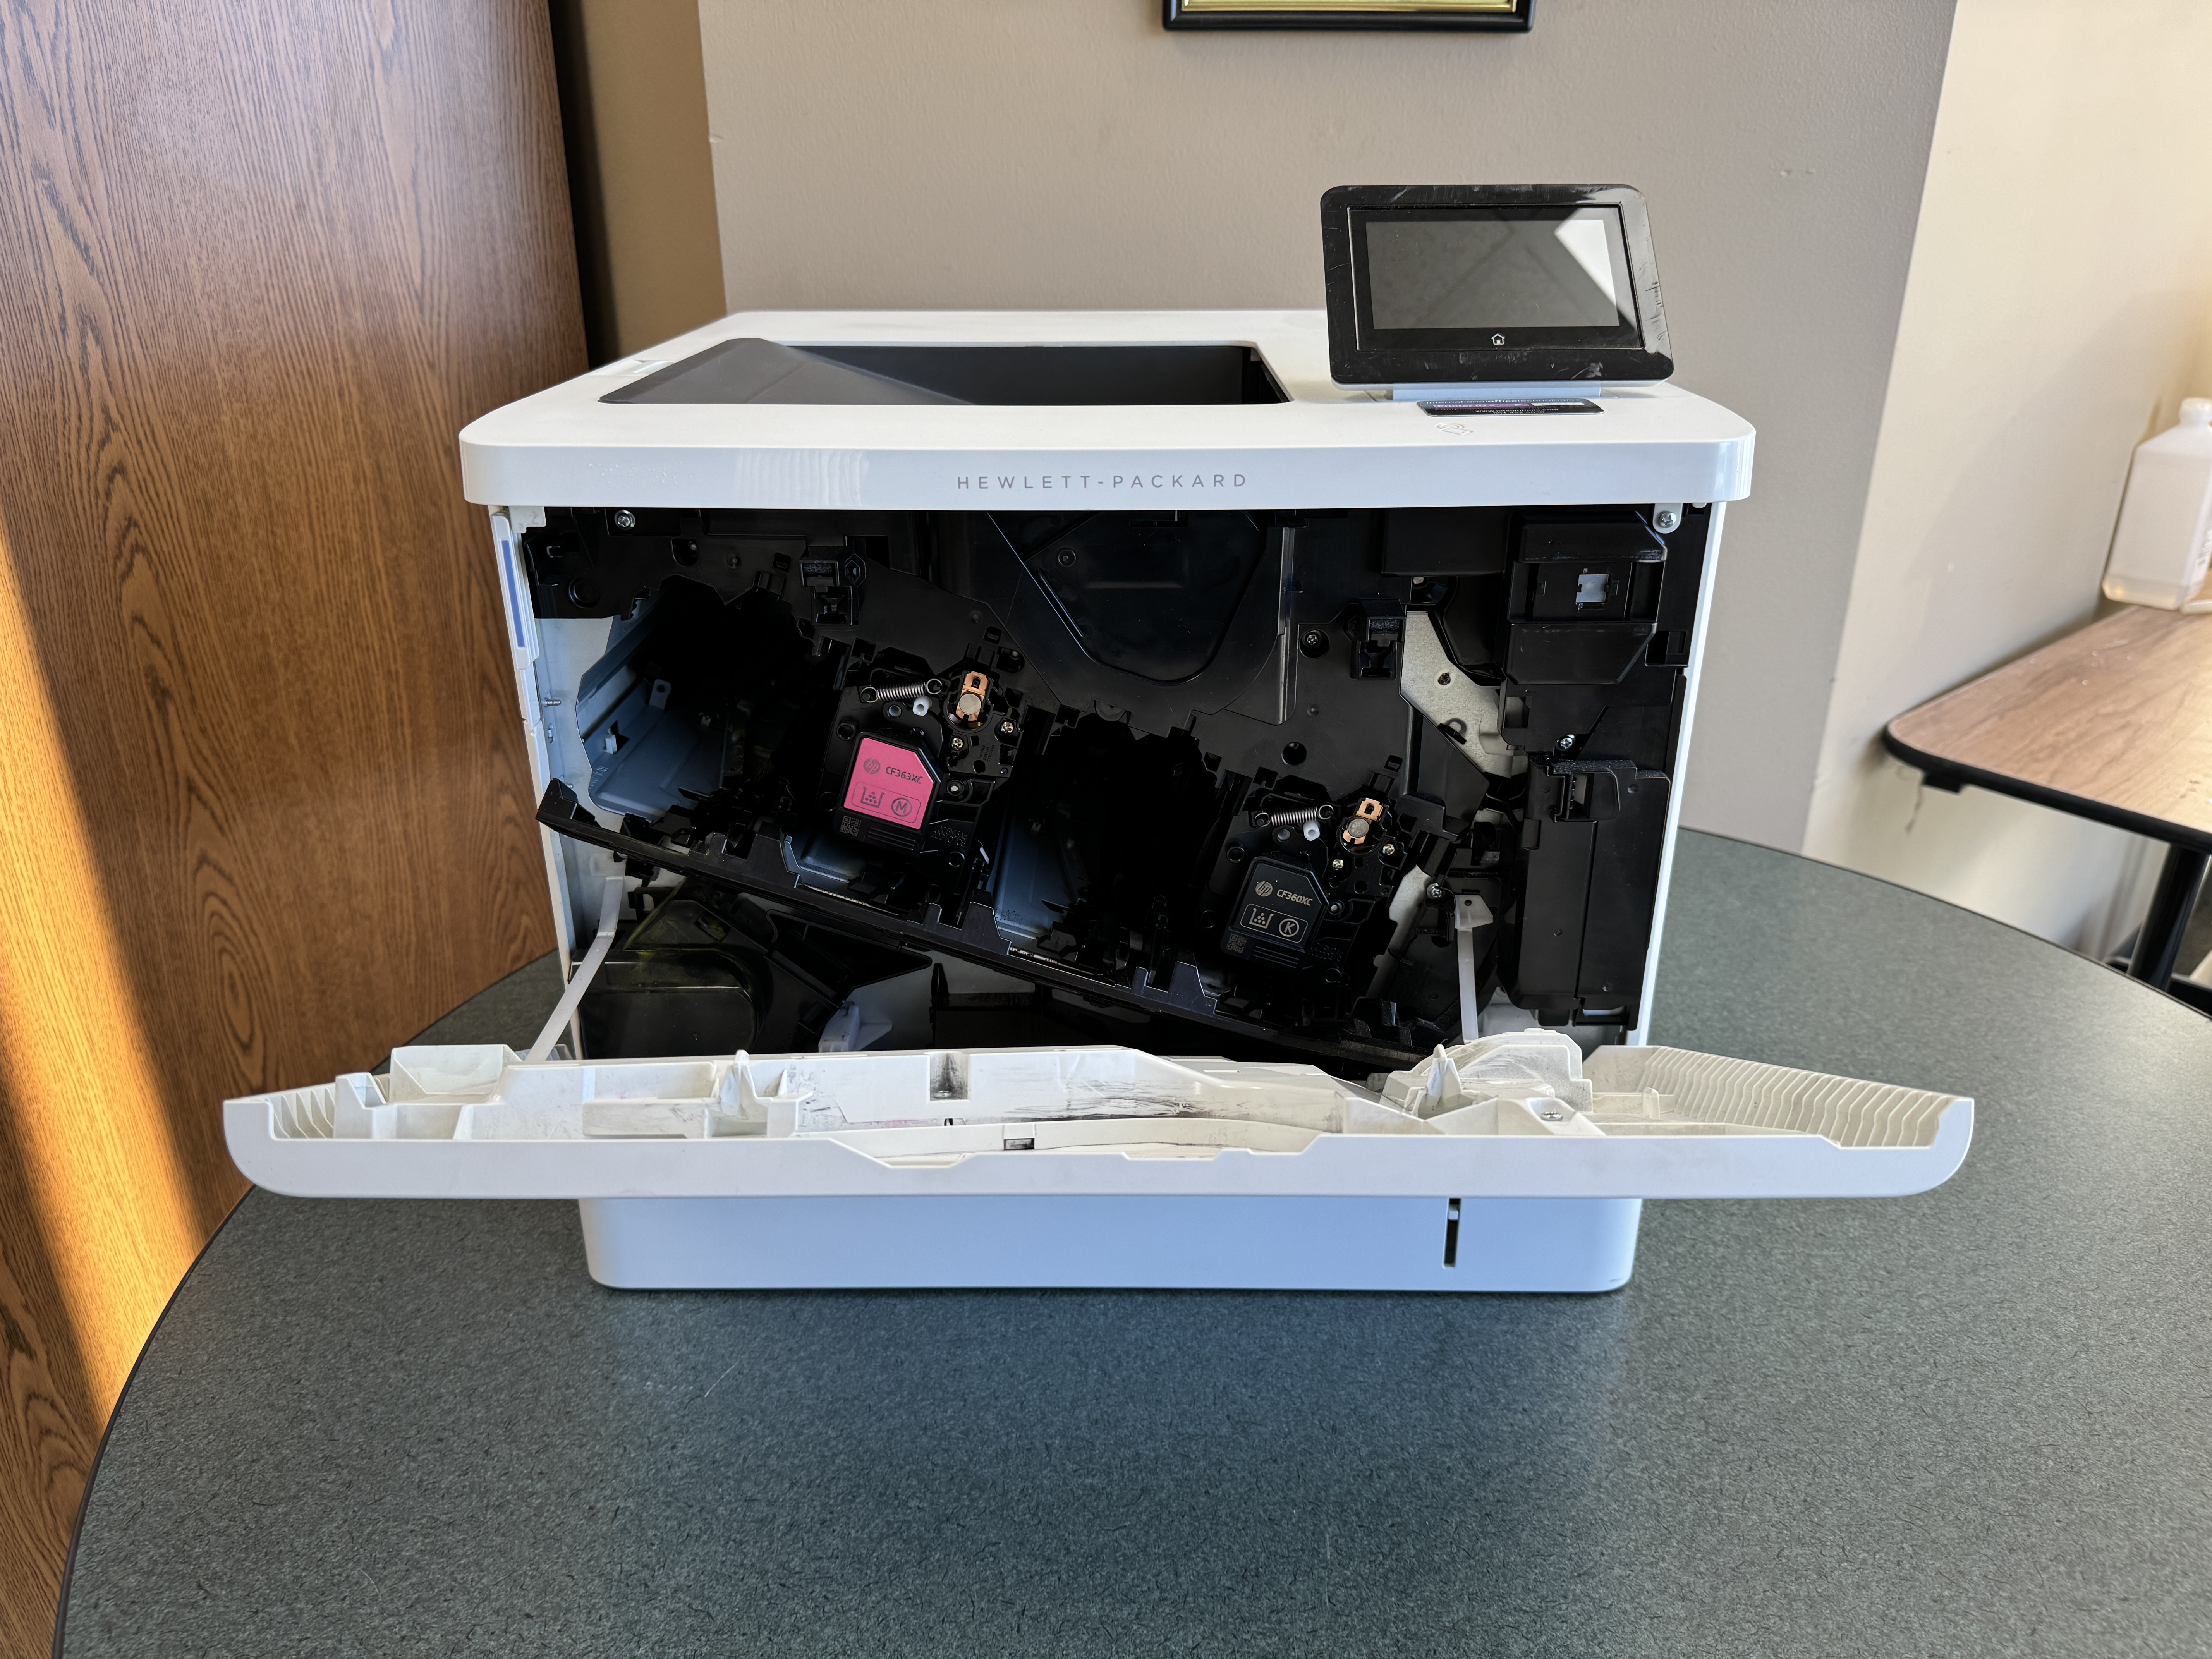 HP laser printer repair of a m533 printer. 